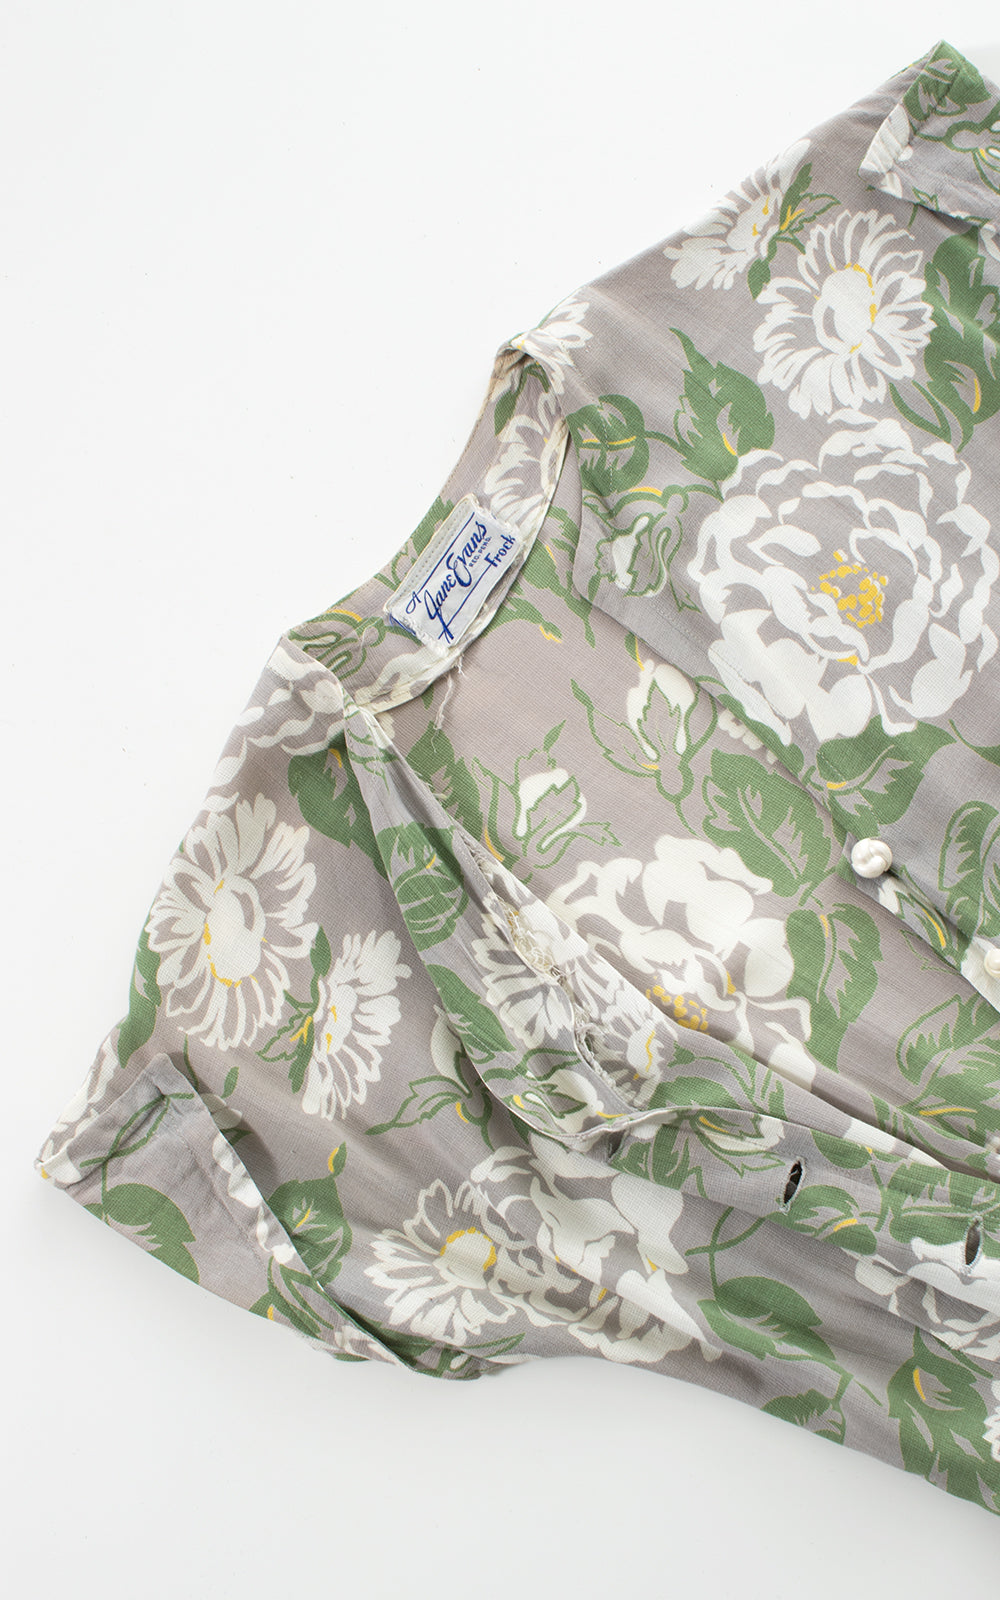 1940s Floral Cotton Shirtwaist Day Dress